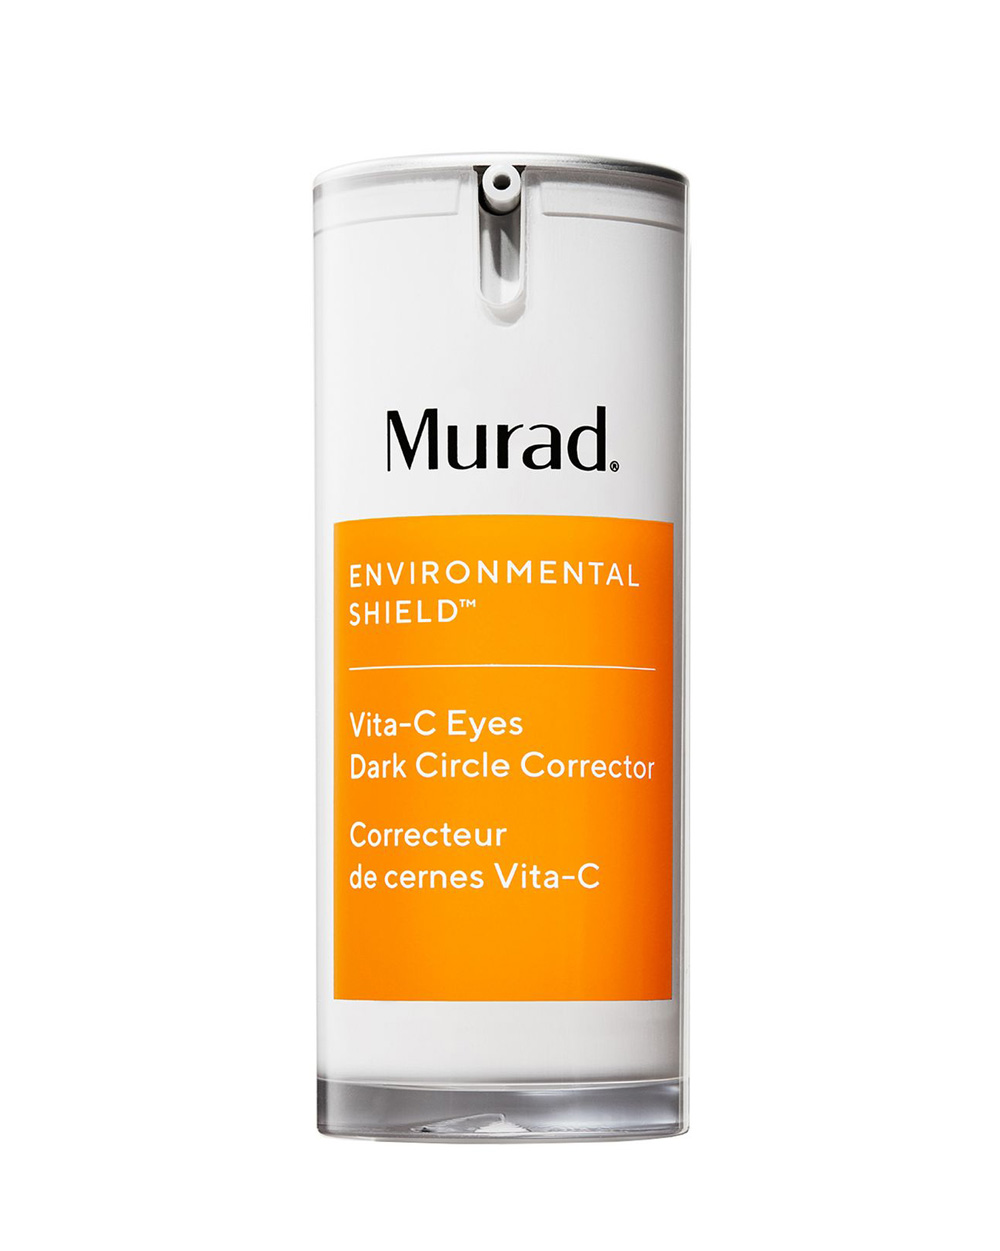 Murad Vita-C Eyes Dark Circle Corrector krema za oči i podočnjake